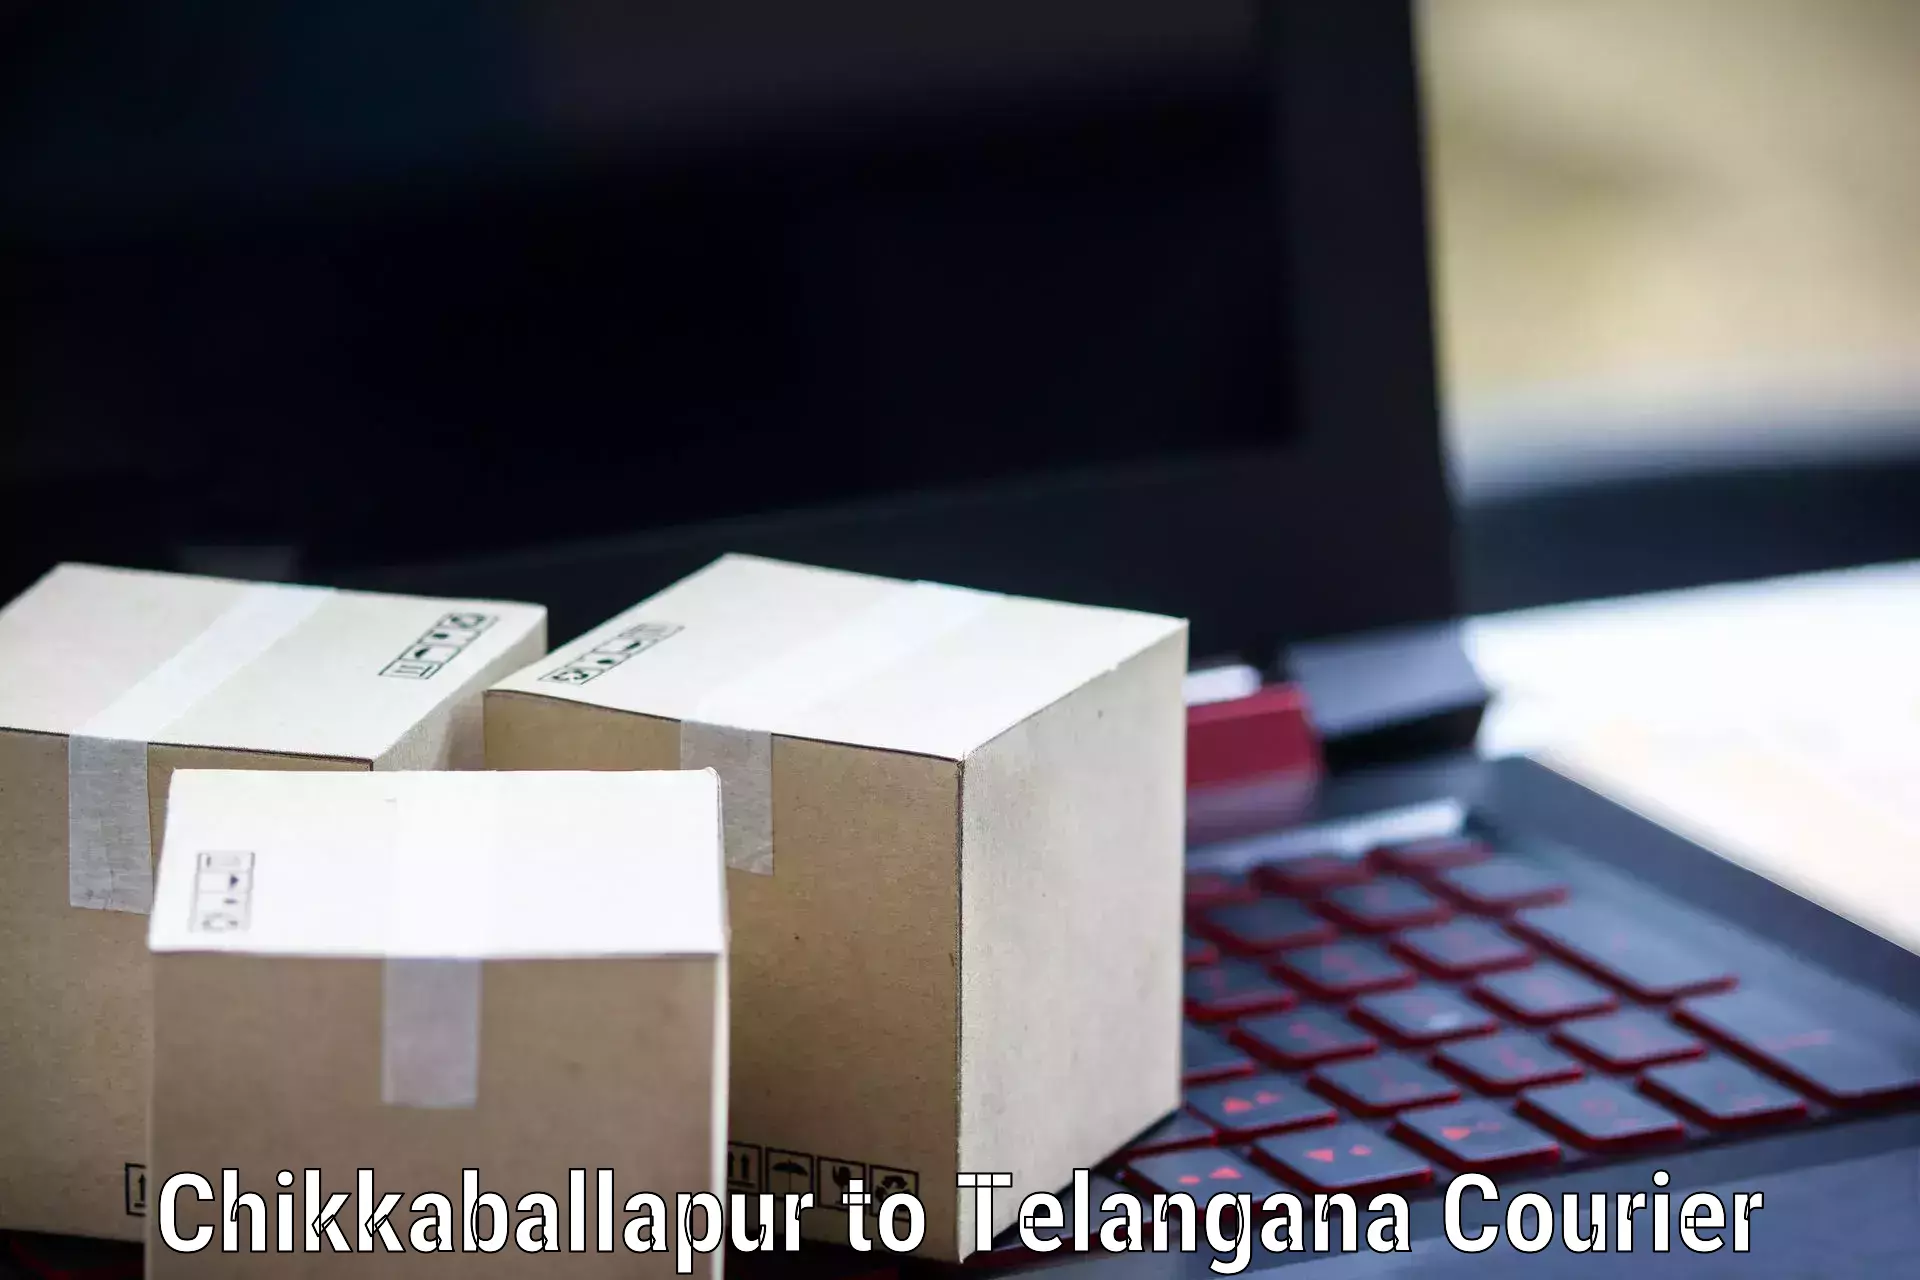 Nationwide parcel services Chikkaballapur to Bellampalli